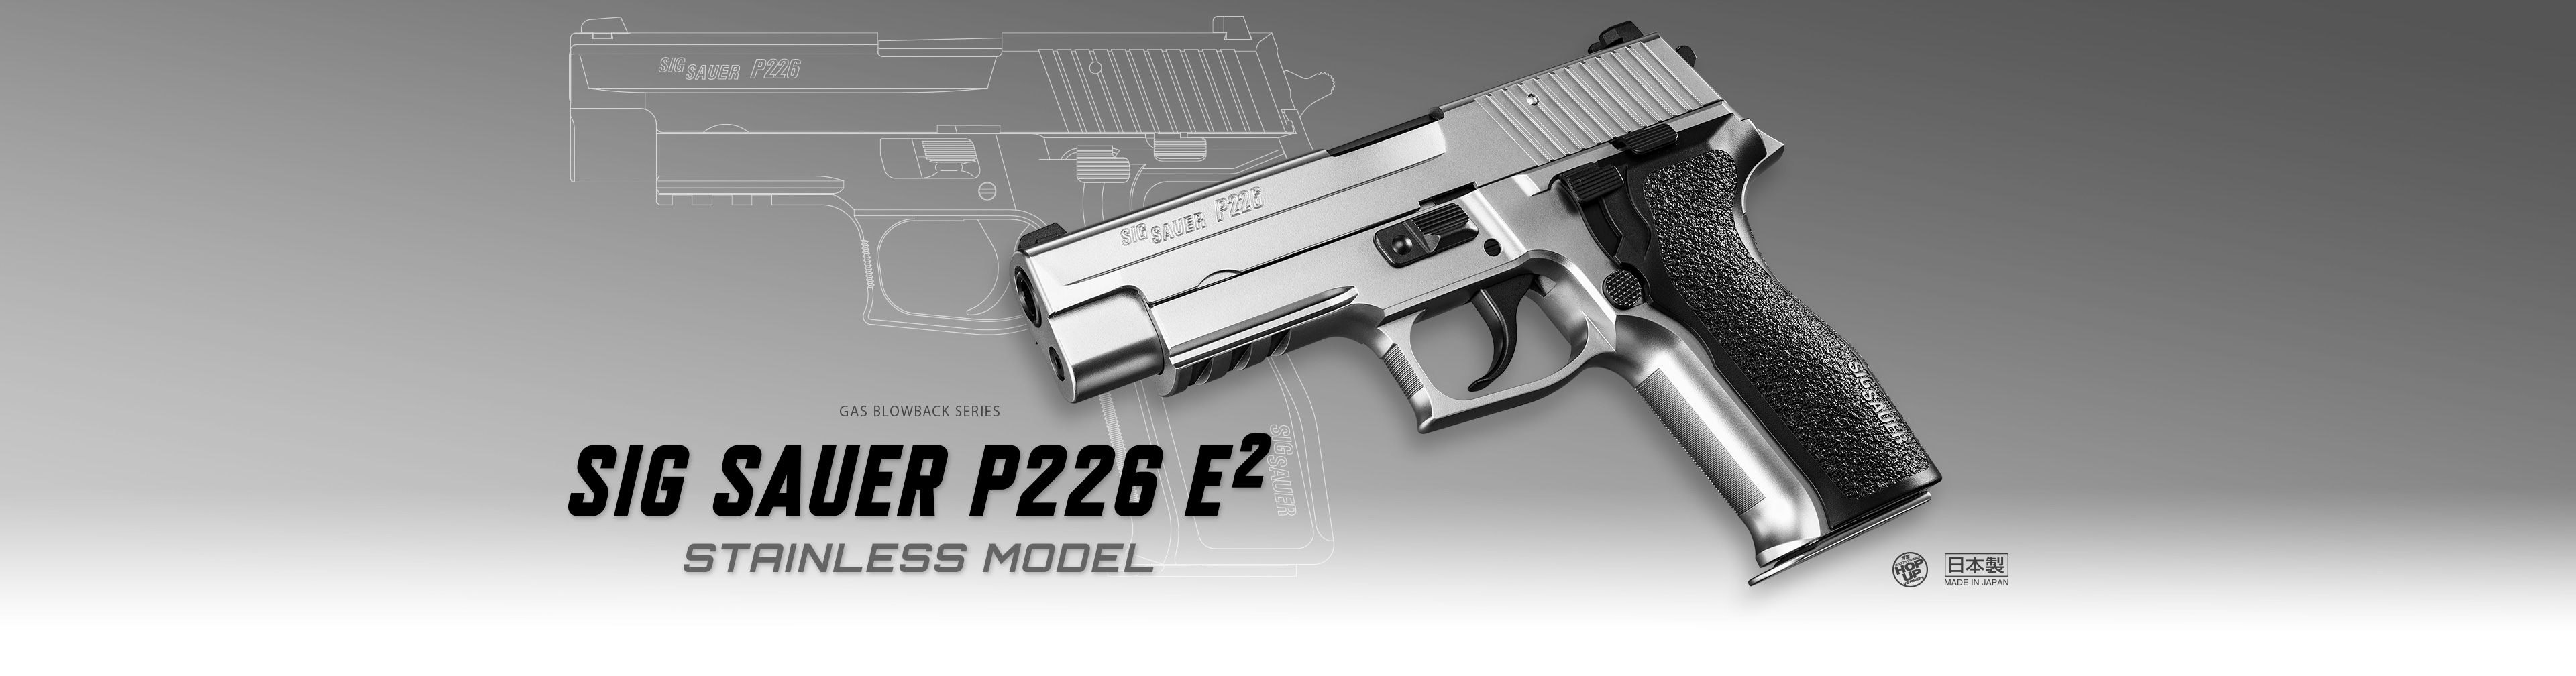 シグ ザウエル P226 E2 ステンレスモデル - ガスブローバック | 東京マルイ エアソフトガン情報サイト